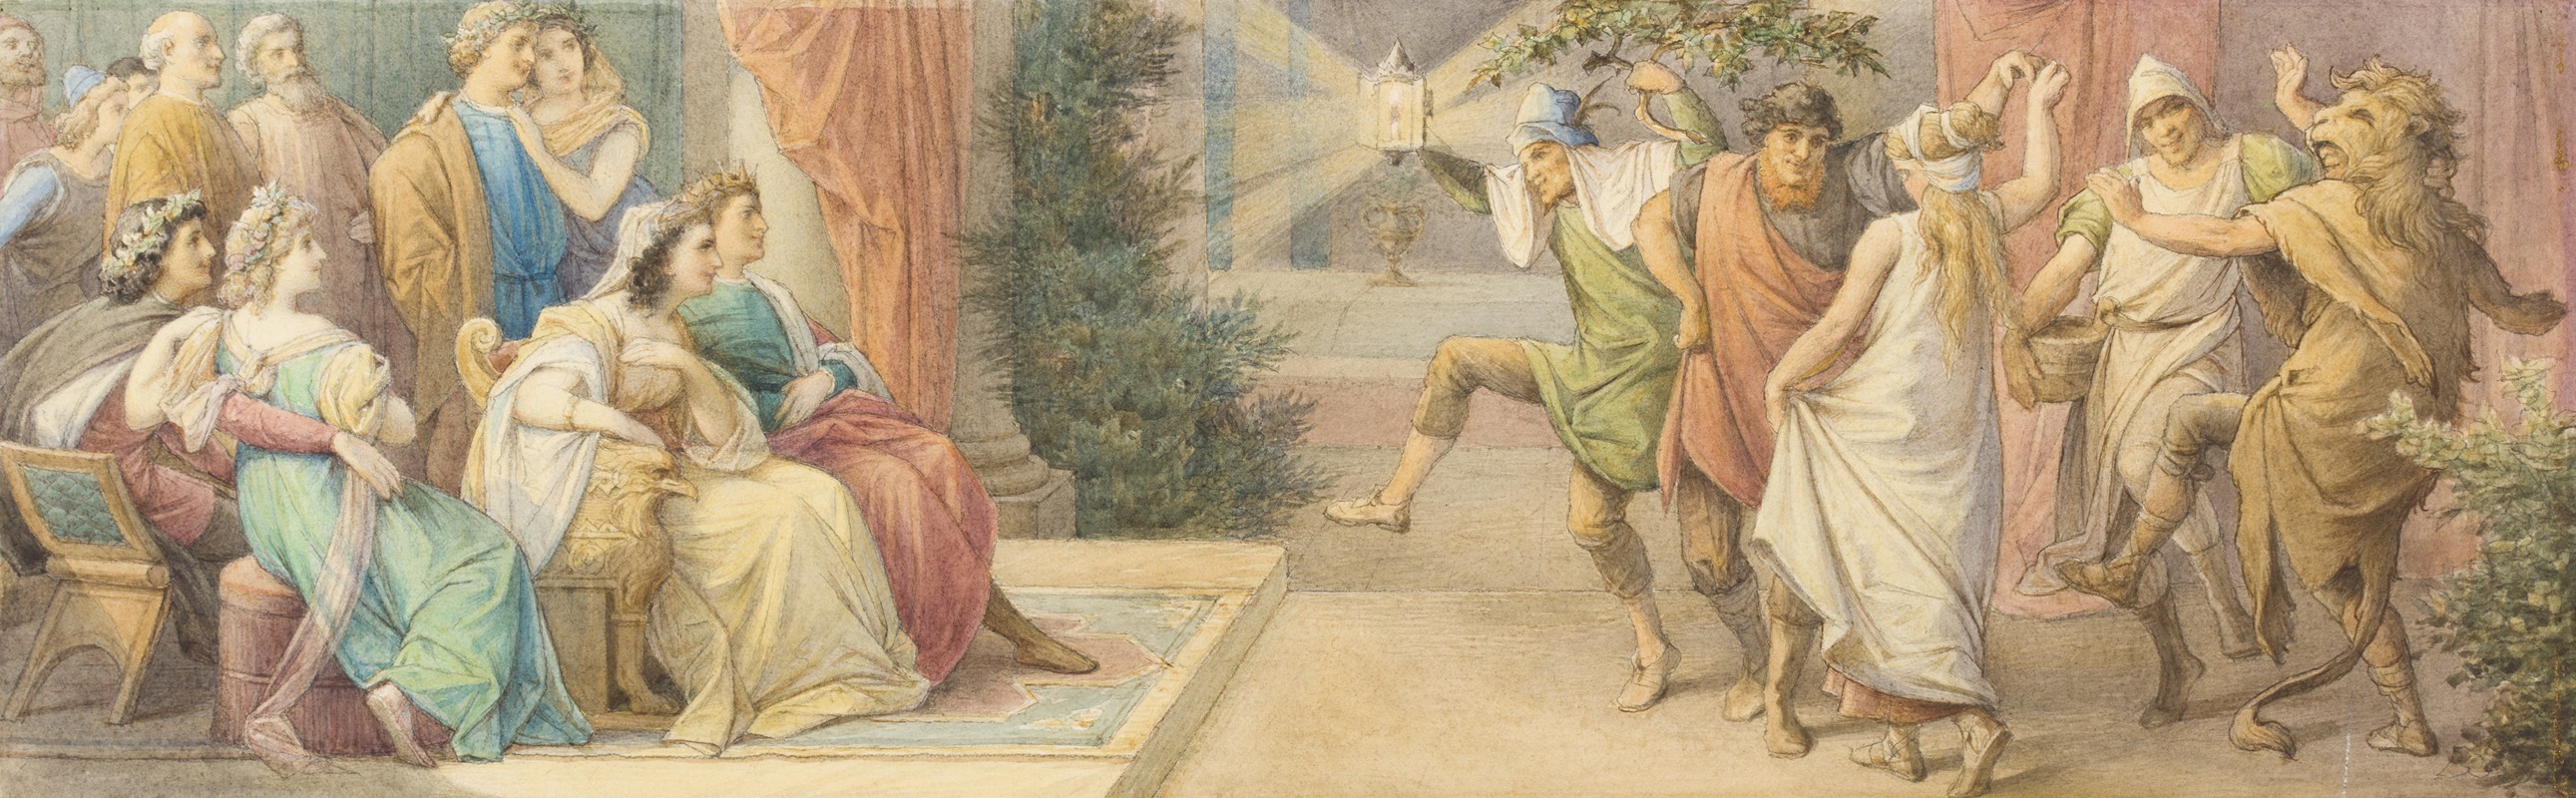 Leopold Bode - Das Herrscherpaar Theseus und Hippolyta, die Brautpaare Demetrius und Helena sowie Lysander und Hermia verfolgen das von den Handwerkern dargebotene Schauspiel